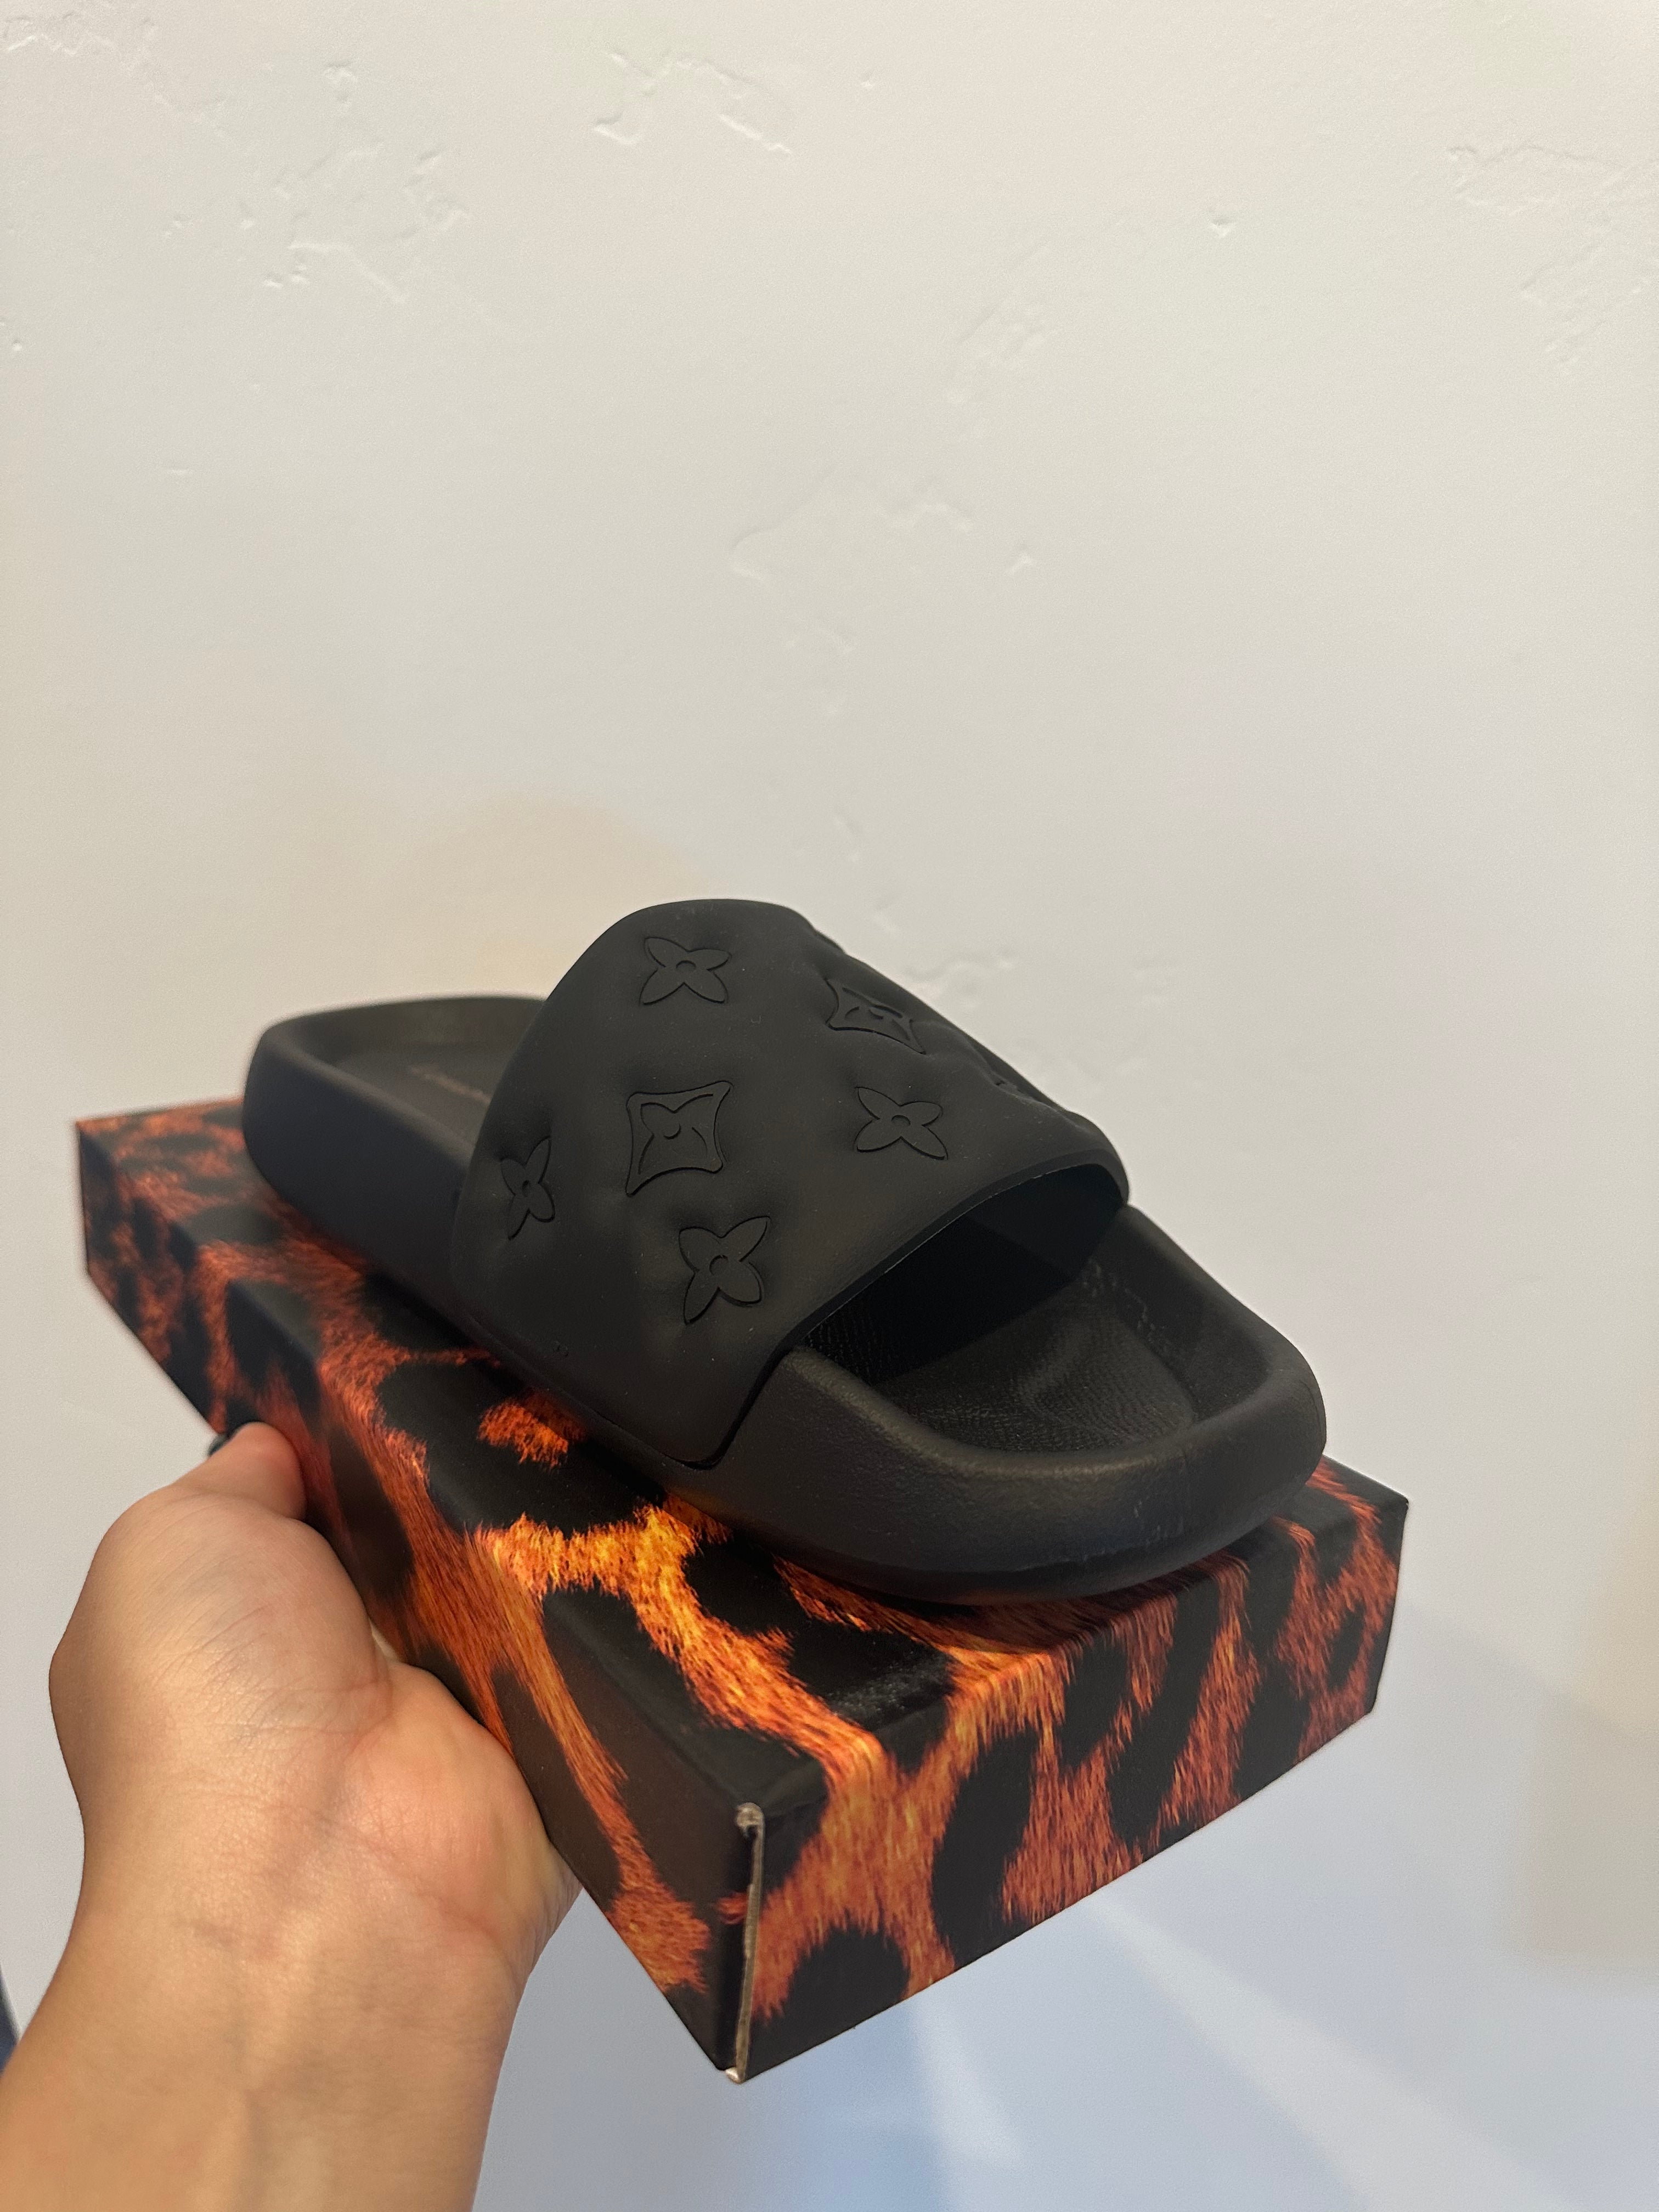 Louis Vuitton LV Monogram Slides - Black Sandals, Shoes